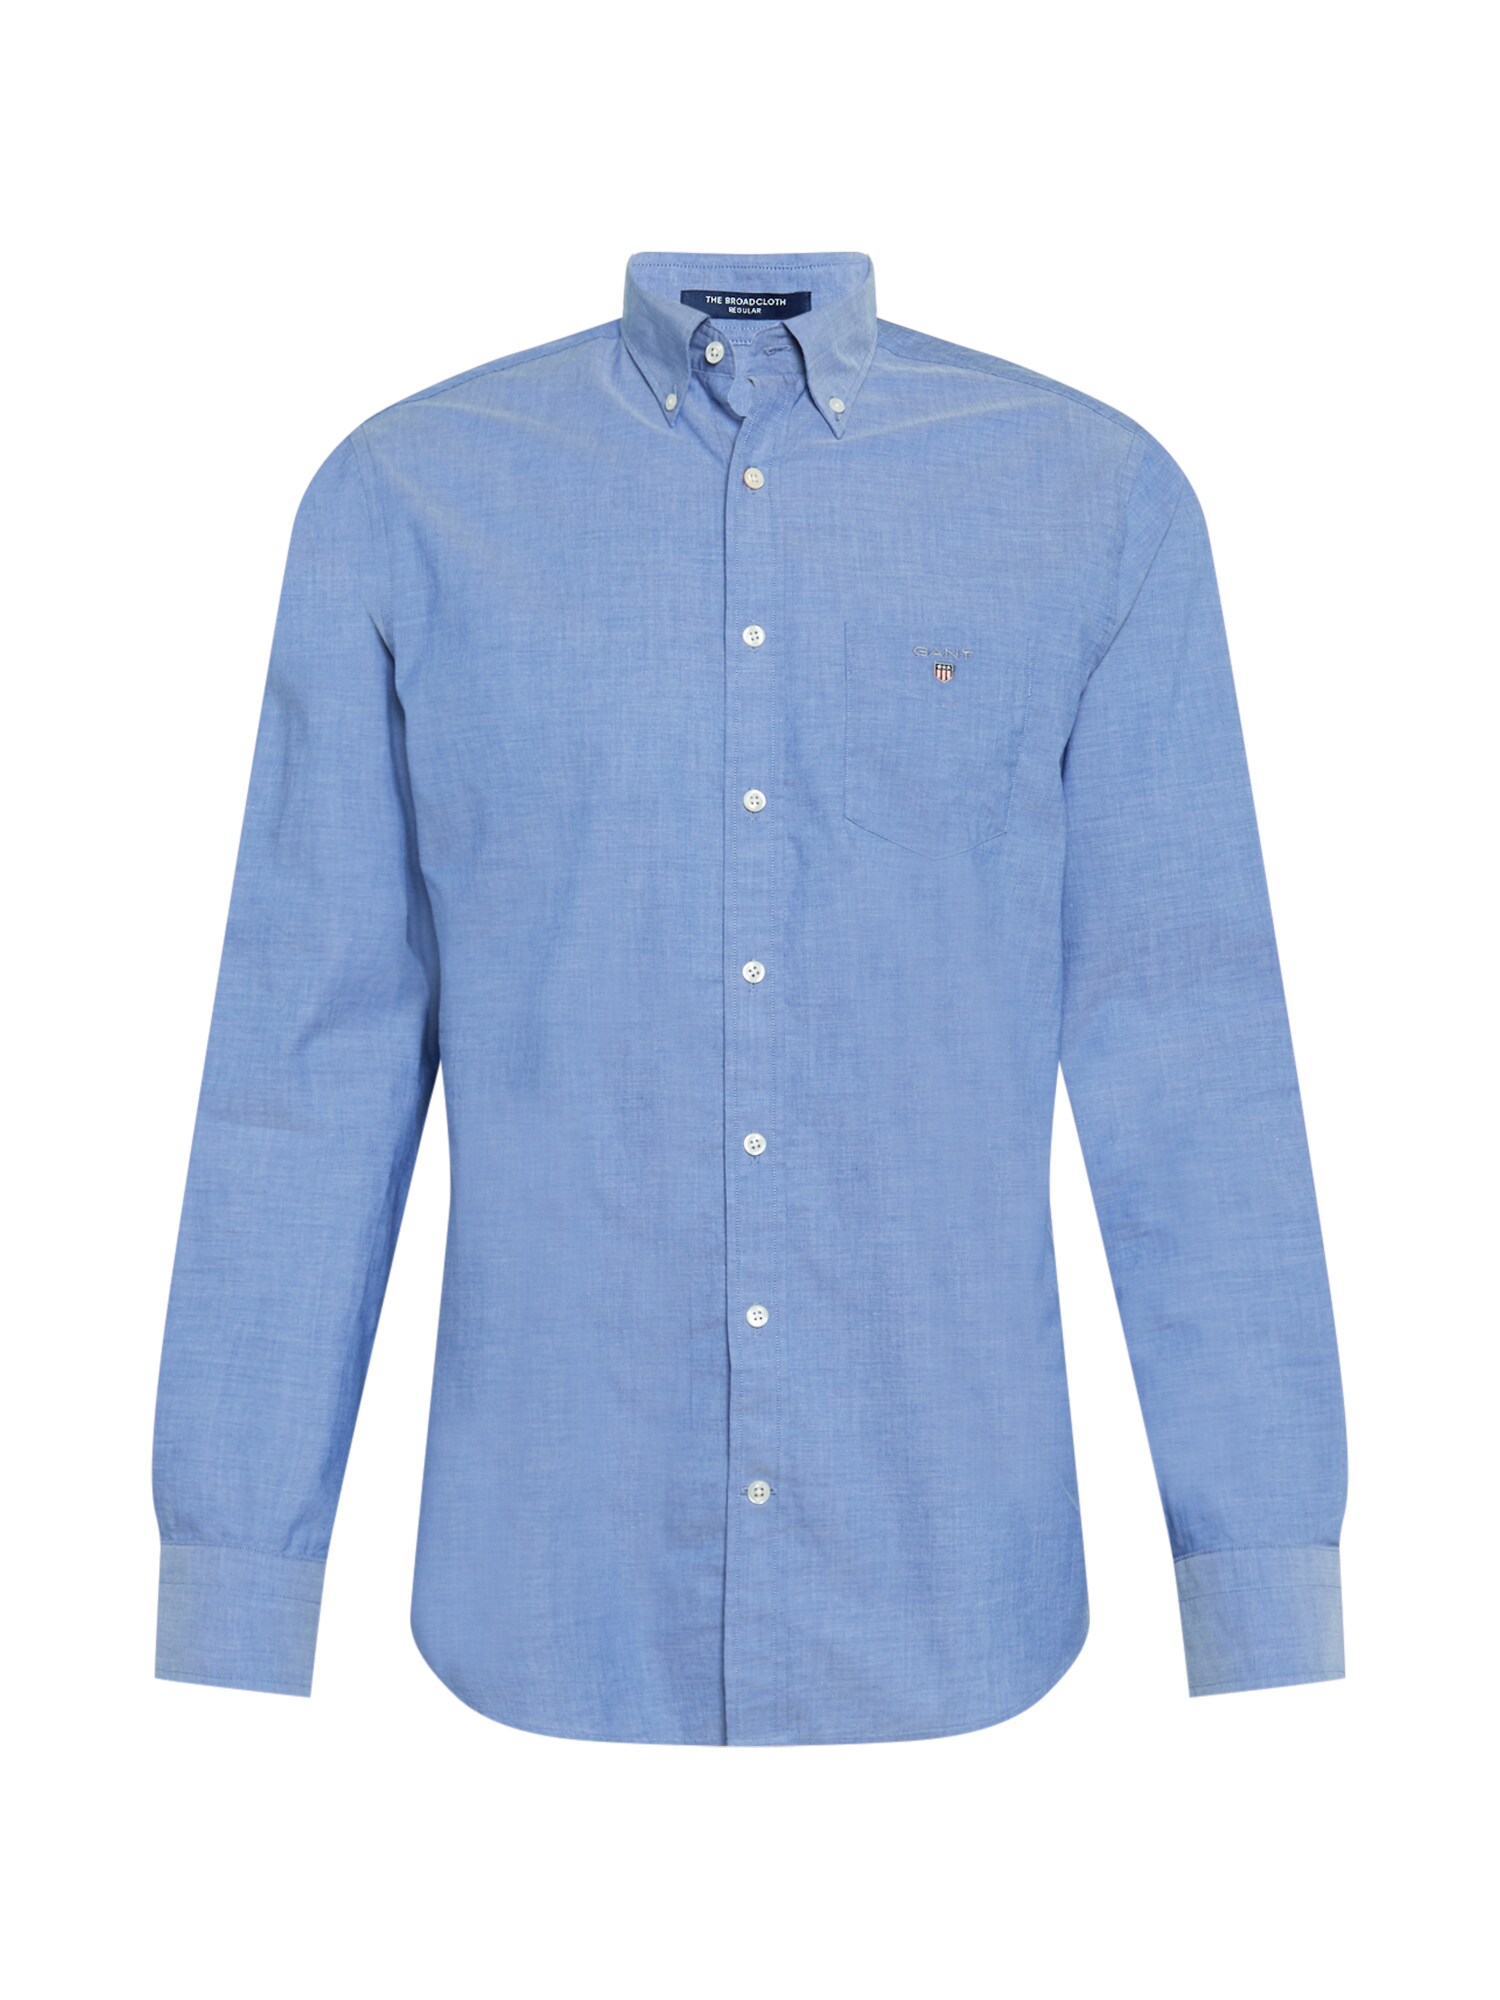 GANT Dalykinio stiliaus marškiniai mėlyna dūmų spalva